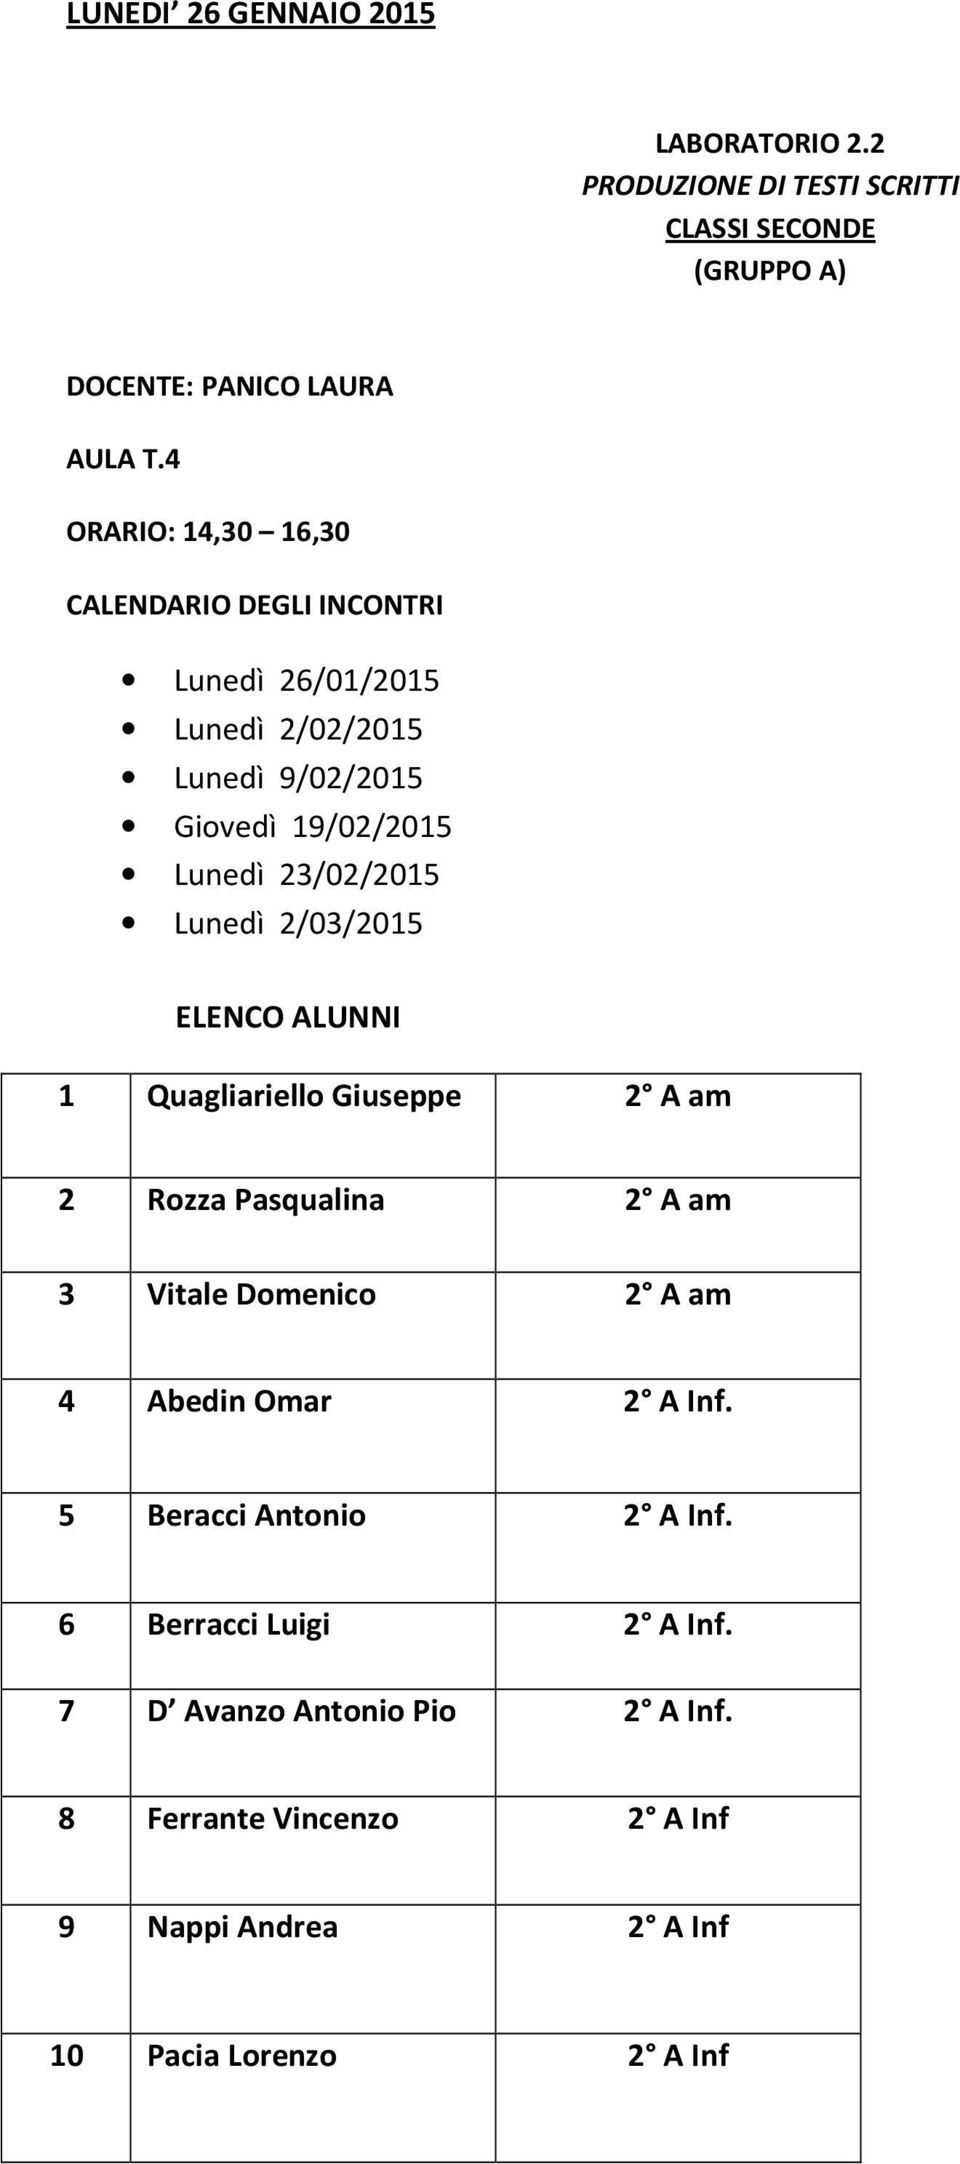 Lunedì 2/03/2015 ELENCO ALUNNI 1 Quagliariello Giuseppe 2 A am 2 Rozza Pasqualina 2 A am 3 Vitale Domenico 2 A am 4 Abedin Omar 2 A Inf.